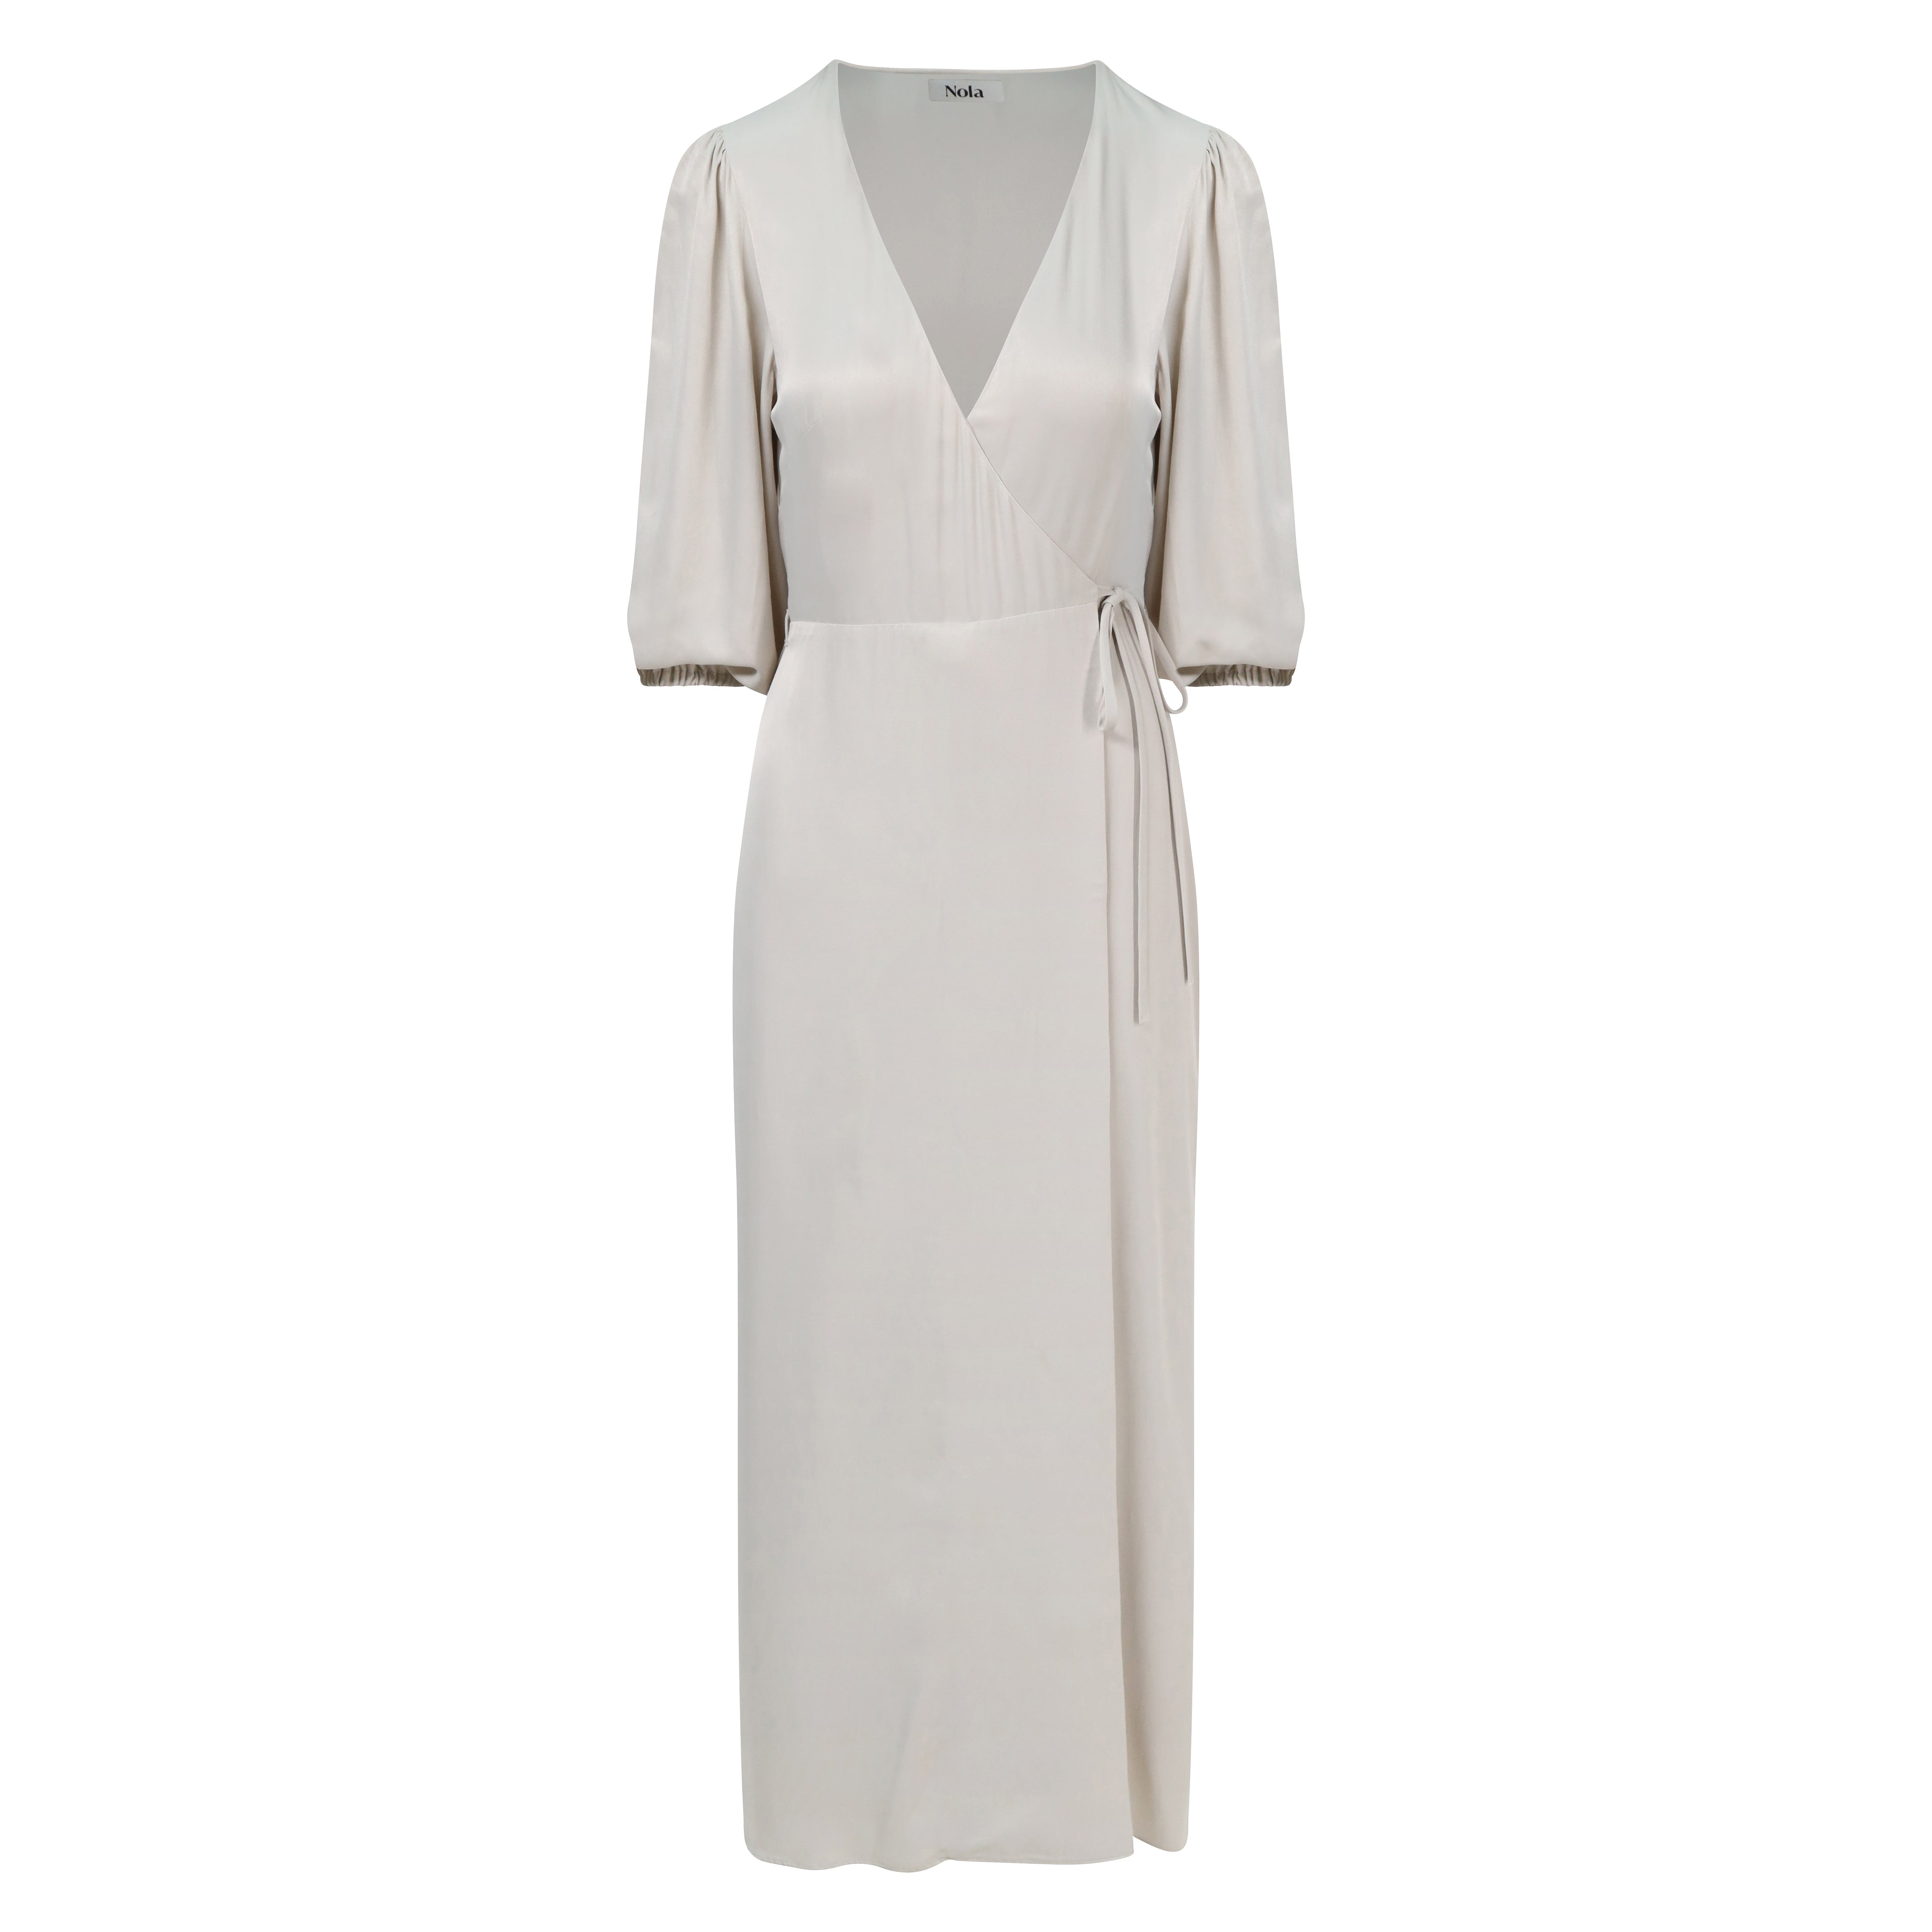 Rae Dress in Oyster Grey – Nola London